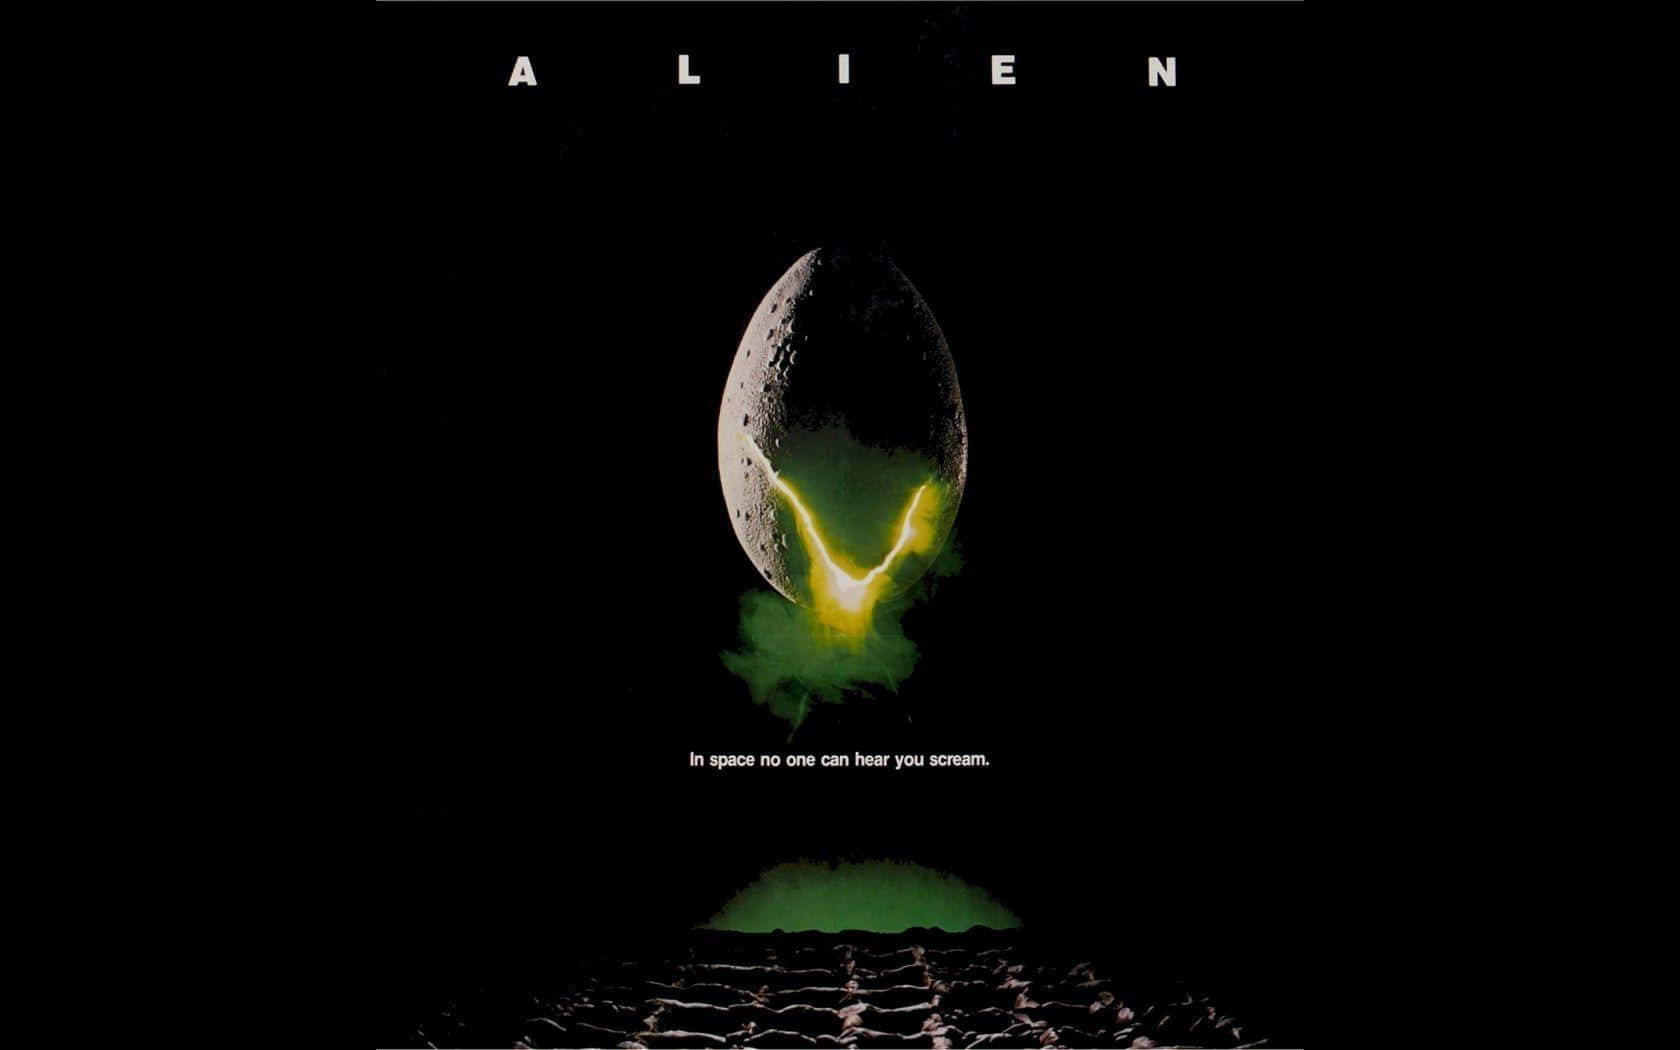 Alienfilmplakat